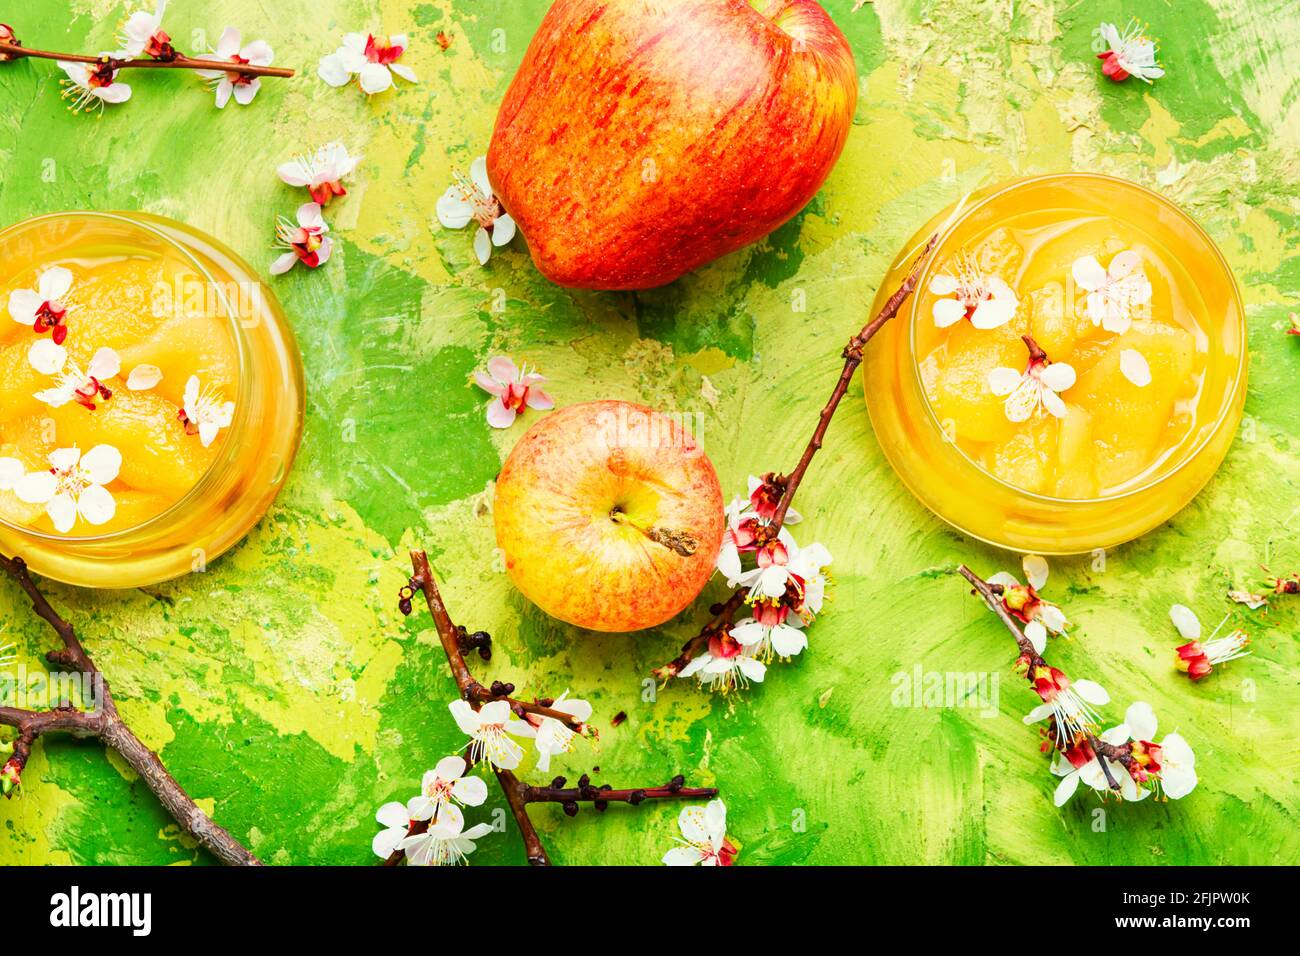 Natürliche Apfelmarmelade oder Apfelmarmelade in einem Glas Stockfoto